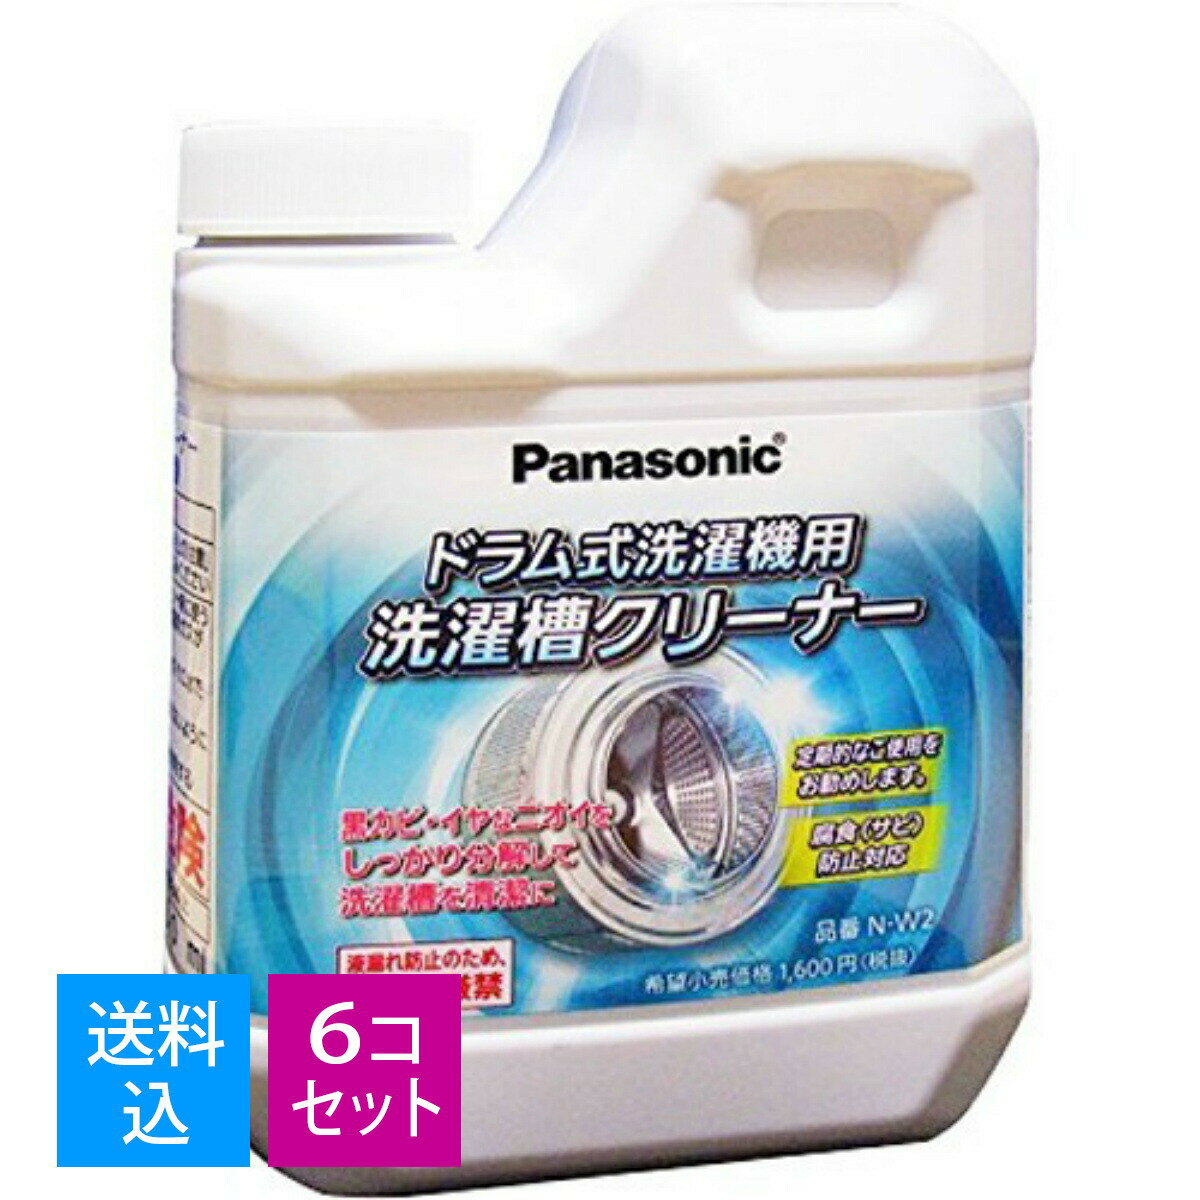 商品名：N－W2　洗濯槽クリーナー （ドラム式専用）内容量：1個ブランド：Panasonic原産国：日本洗濯槽クリーナー（ドラム式専用）ドラム式洗濯機用の洗濯槽クリーナーです。洗剤の使用量や商品の長期使用により、洗濯槽に付着した洗剤カス・汚れなどを洗浄します。1回分（750ml）JANコード:4549077290441商品番号：101-60337ドラム式洗濯機専用の洗濯槽クリーナーです。洗剤の使用量や商品の長期使用により、洗濯槽に付着した洗剤カス・汚れなどを洗浄します。使用方法槽洗浄コースを選択し、満水になったら手動で停止、クリーナーを全量投入してください。ご注意●他の用途には絶対使用しない。●容器を強く持ってキャップを開けない。●他の容器に移して使用しない。●40度以上のお湯では使用しない。●ゴム製の手袋、目の保護に眼鏡等を着用する。●子供の手の届くところに置かない。成分次亜塩素酸ナトリウム、防色補助剤(ケイ素)対応商品NA-VX9600R-W/NA-VX7200R-W/NA-VG700L-S/NA-VT8000L-W/NA-VD110L-W/NA-VD130L-W/NA-VD150L-W/NA-VX7300L-N/NA-VX7500R/NA-VX3300L-W/NA-VX9500R/NA-VX7300L-W/NA-VX5300R-W/NA-VX8500R-W/NA-VX9300R-W/NA-VX5E2L/NA-V1700L/NA-VR2600L/NA-VX8600L-N/NA-VD200L-CK/NA-VX5000L/NA-VR1200L/NA-VR1100/NA-VX7000L-N/NA-VX860SL-W/NA-VR1200R/NA-VX3101L-W/NA-VX8600L-W/NA-VX3000L-W/NA-VX7000L-W/NA-VT8200L-W/NA-VX8200R-W/NA-VH310L-W/NA-VX3001L/NA-VX7500L-N/NA-VR3500L/NA-VX5100L-N/NA-VX5E3R-W/NA-VR5500L/NA-VS1000L-N/NA-VX3500L-W/NA-VR3500R/NA-VR5500R/NA-VX7500L-W/NA-VX5100L-W/NA-VX9500R-W/NA-V1500L/NA-VG1000R-S/NA-VD220L-CK/NA-V1500R/NA-S81/NA-VR1000/NA-VX7200L-N/NA-V62/NA-VX9600L-W/NA-VX7200L-W/NA-VX7600R-W/NA-VX5200R-W/NA-VG700R-S/NA-VD100L-W/NA-VD120L-W/NA-VX3100L/NA-VX5300L-N/NA-VX8500L-N/NA-VX8500R/NA-VX5300L-W/NA-VX8500L-W/NA-VX9300L-W/NA-VX7300R-W/NA-V920L/NA-VR3600L/NA-V80/NA-V81/NA-VR5600L/NA-V82/NA-VR2200L/NA-V920R/NA-VR3600R/NA-VR5600R/NA-VR2200R/NA-V900/NA-VX860SR-W/NA-VX8200L-W/NA-VX3101R-W/NA-VX8600R-W/NA-SK600/NA-VT8200R-W/NA-V1600L/NA-VH32SL-W/NA-VX5E3L-W/NA-VH300L-W/NA-VX850SL/NA-V1600R/NA-VH320L-W/NA-VD210L-CK/NA-VR2500L/NA-VX7100L-N/NA-VR1100R/NA-VS1000R-N/NA-VX9500L-W/NA-VX7100L-W/NA-VX7100L-X/NA-VX7500R-W/NA-VG1000L-N/NA-VG1000L-S/NA-VX7600L-N/NA-VX5200L-N/NA-VX3600L-W/NA-VX7600L-W/NA-VX5200L-W日用品・生活雑貨広告文責：アットライフ株式会社TEL 050-3196-1510※商品パッケージは変更の場合あり。メーカー欠品または完売の際、キャンセルをお願いすることがあります。ご了承ください。